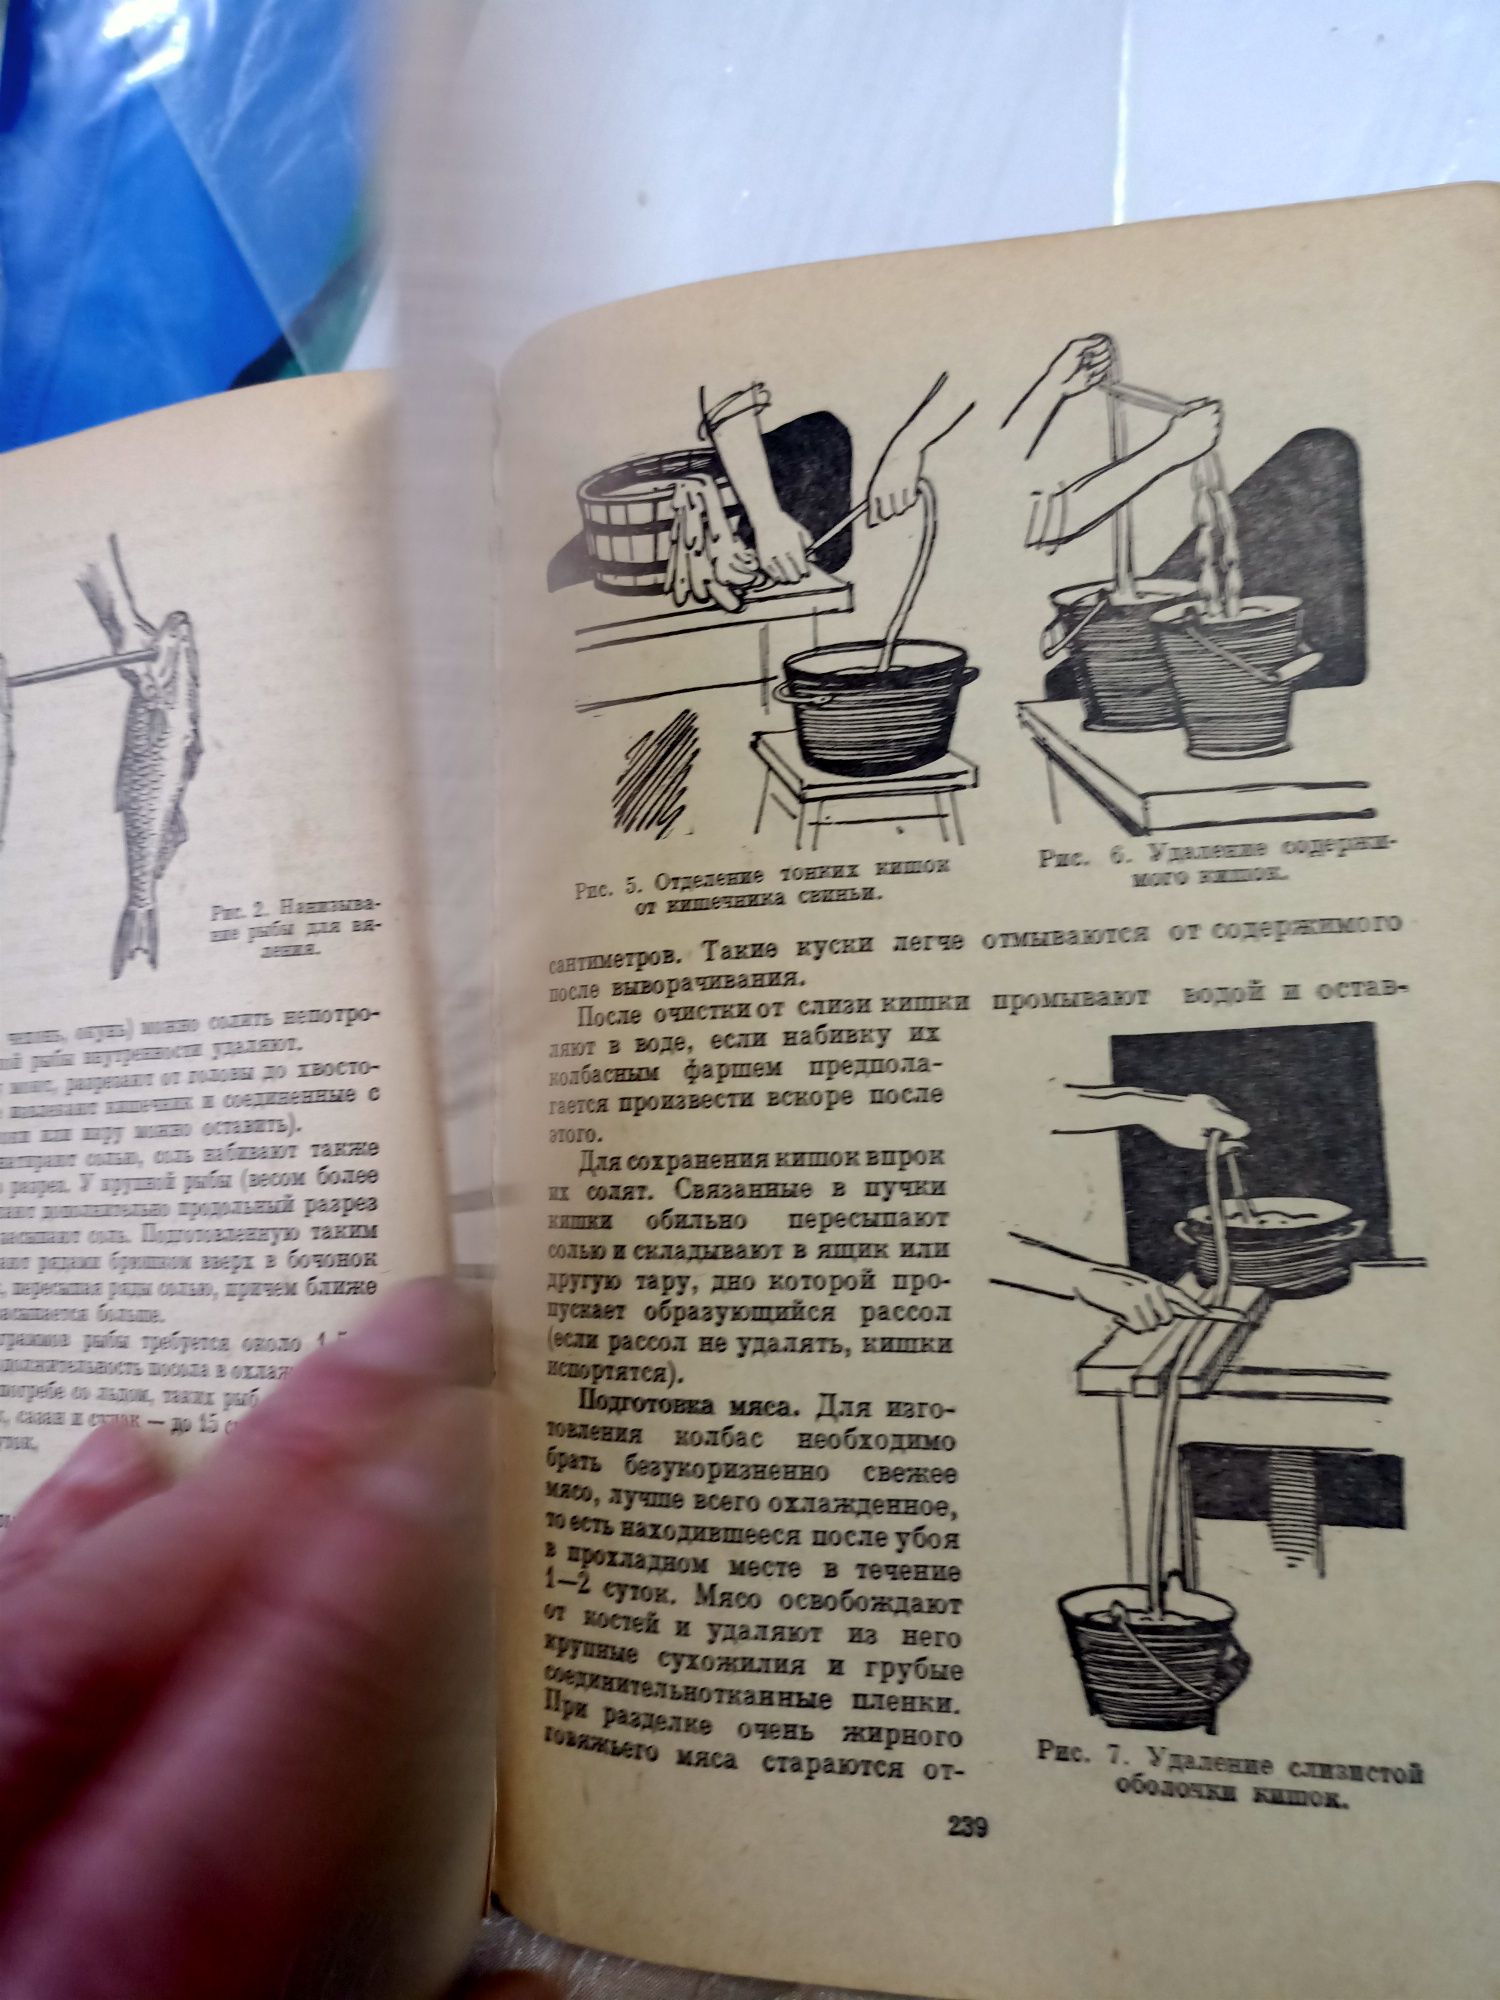 Книга Домоводство Раритет издательство СССР в 1965 год .